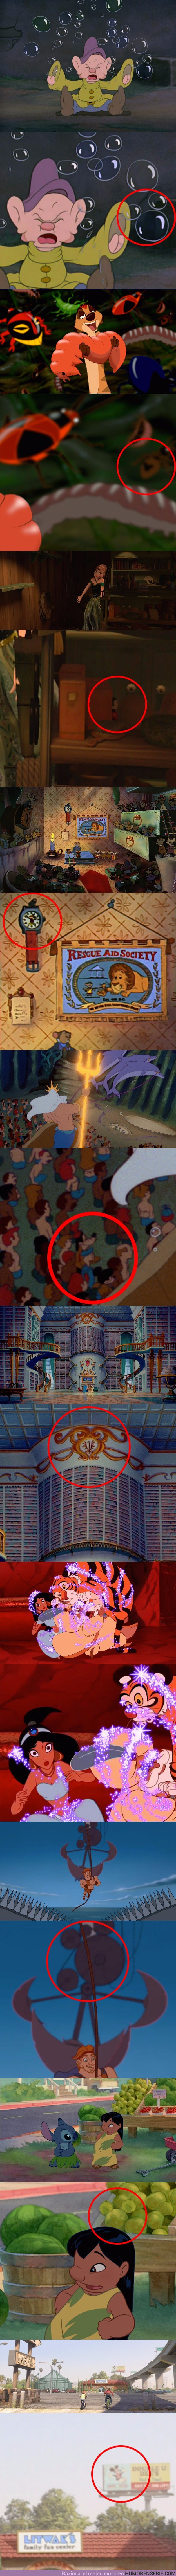 12106 - Las películas clásicas de Disney están llenas de Mickey ocultos